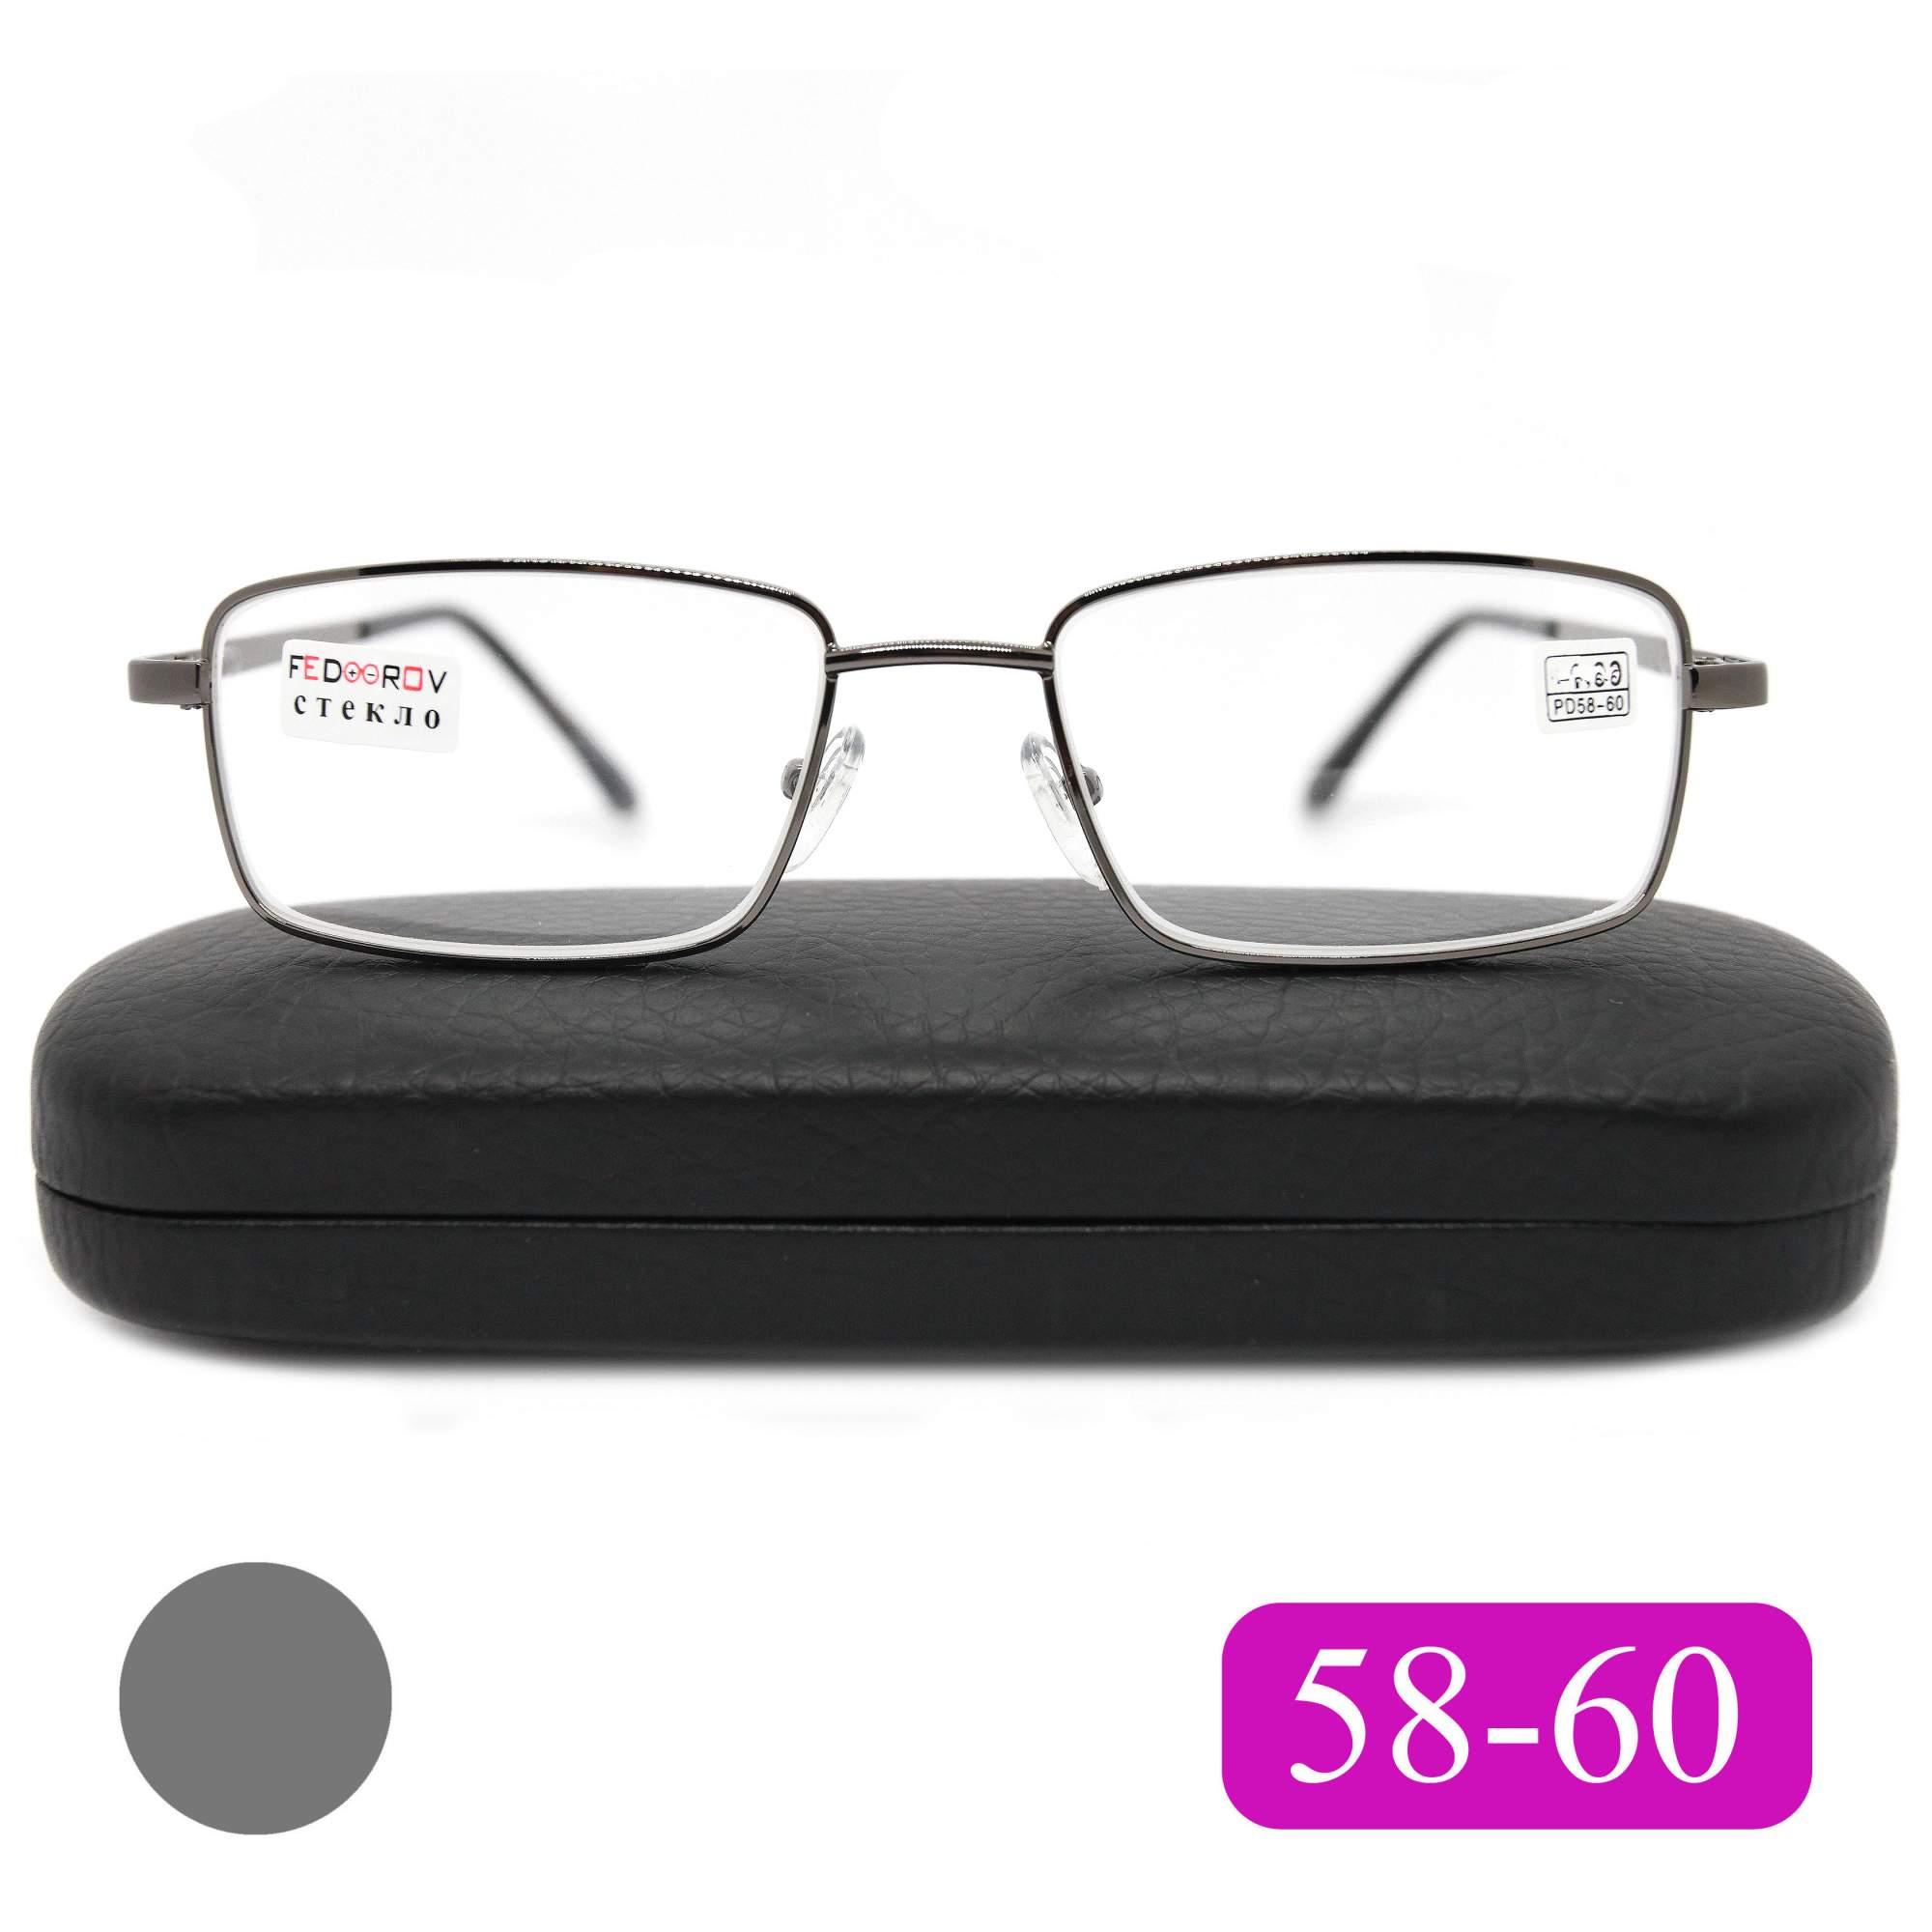 Готовые очки Fedrov 569, со стеклянной линзой, +0,50, c футляром, цвет серый, РЦ 58-60